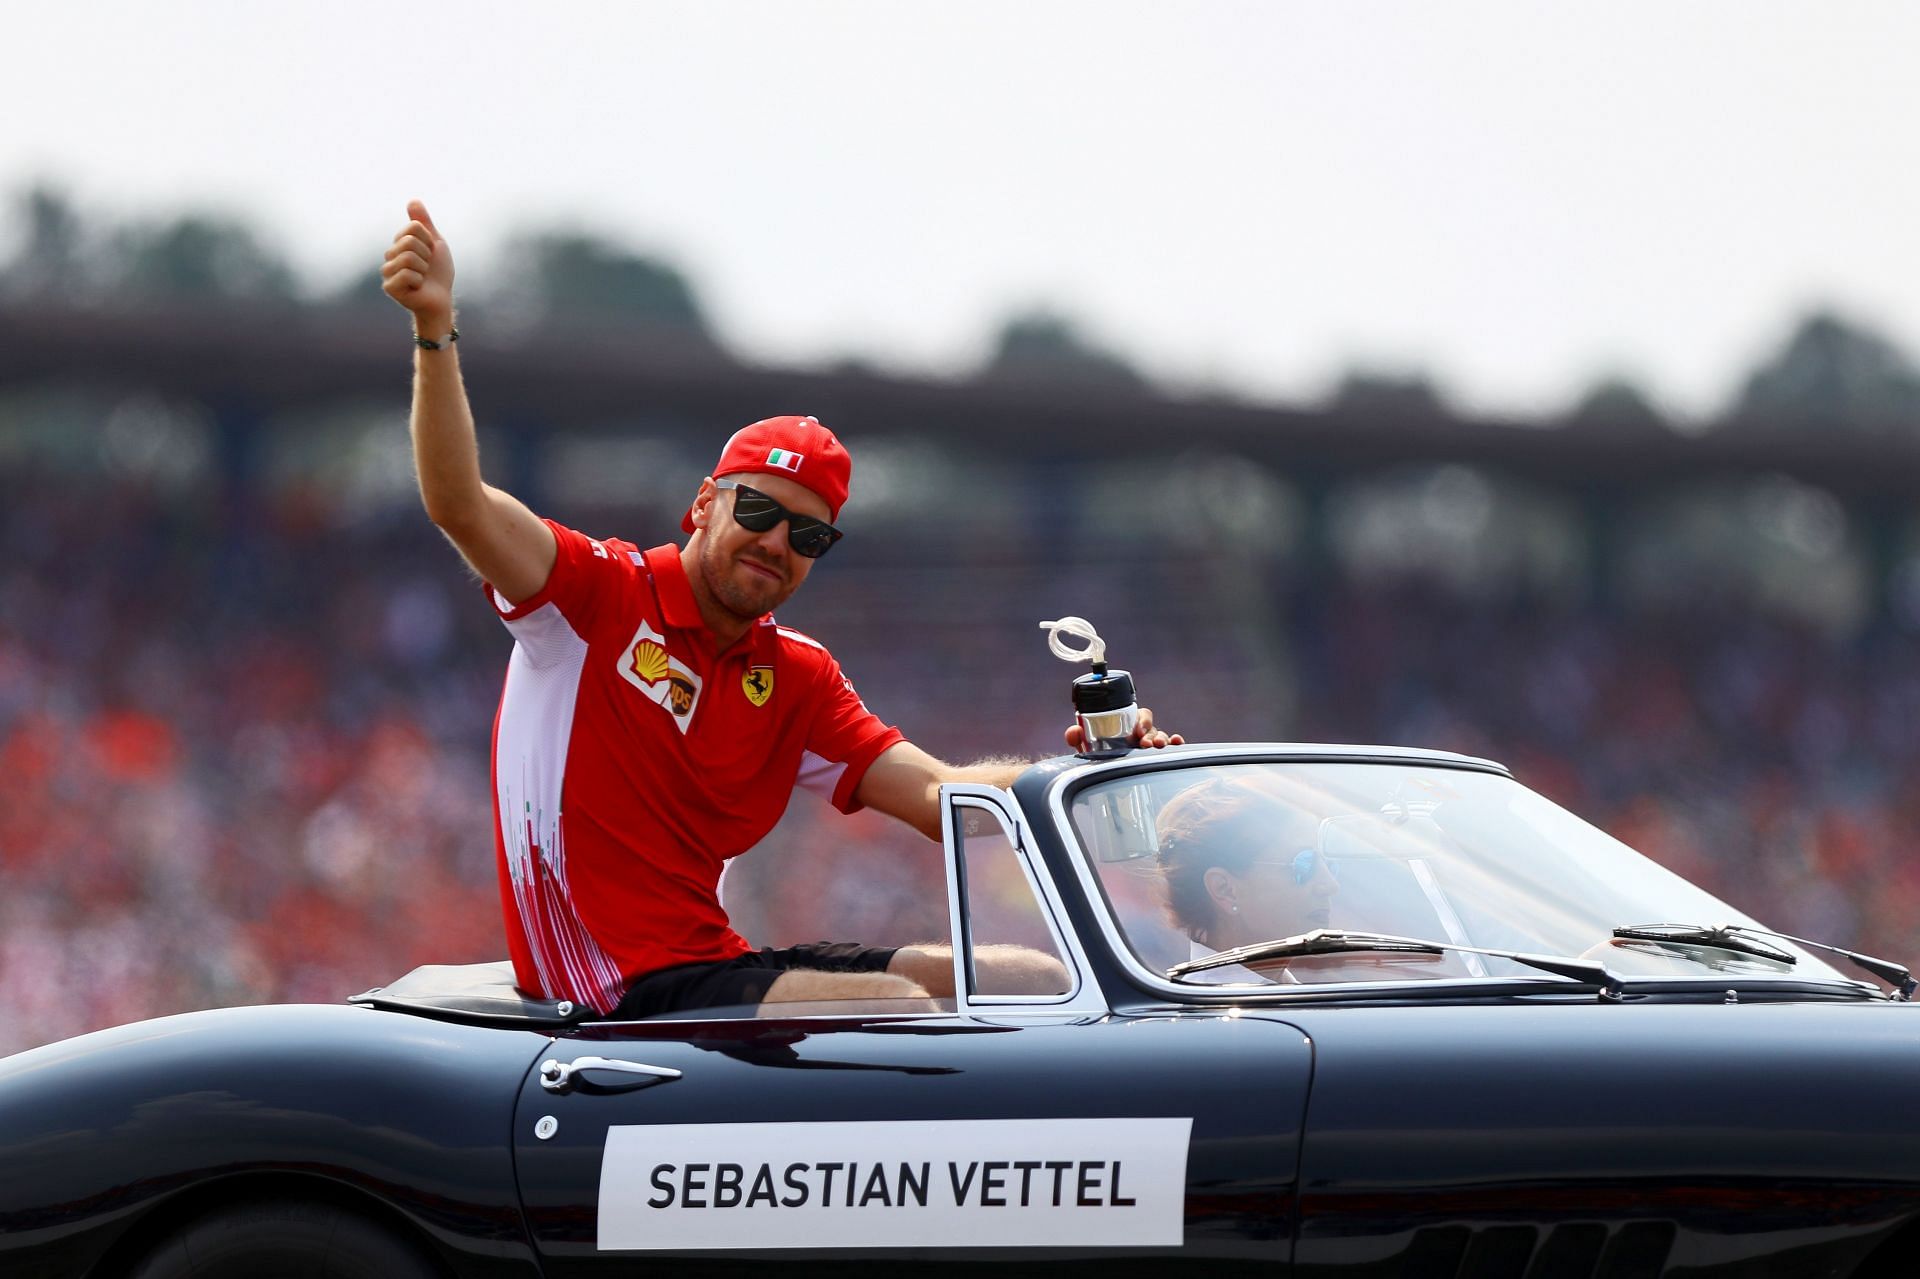 Sebastian Vettel at the Hockenheimring for the 2018 F1 Grand Prix of Germany